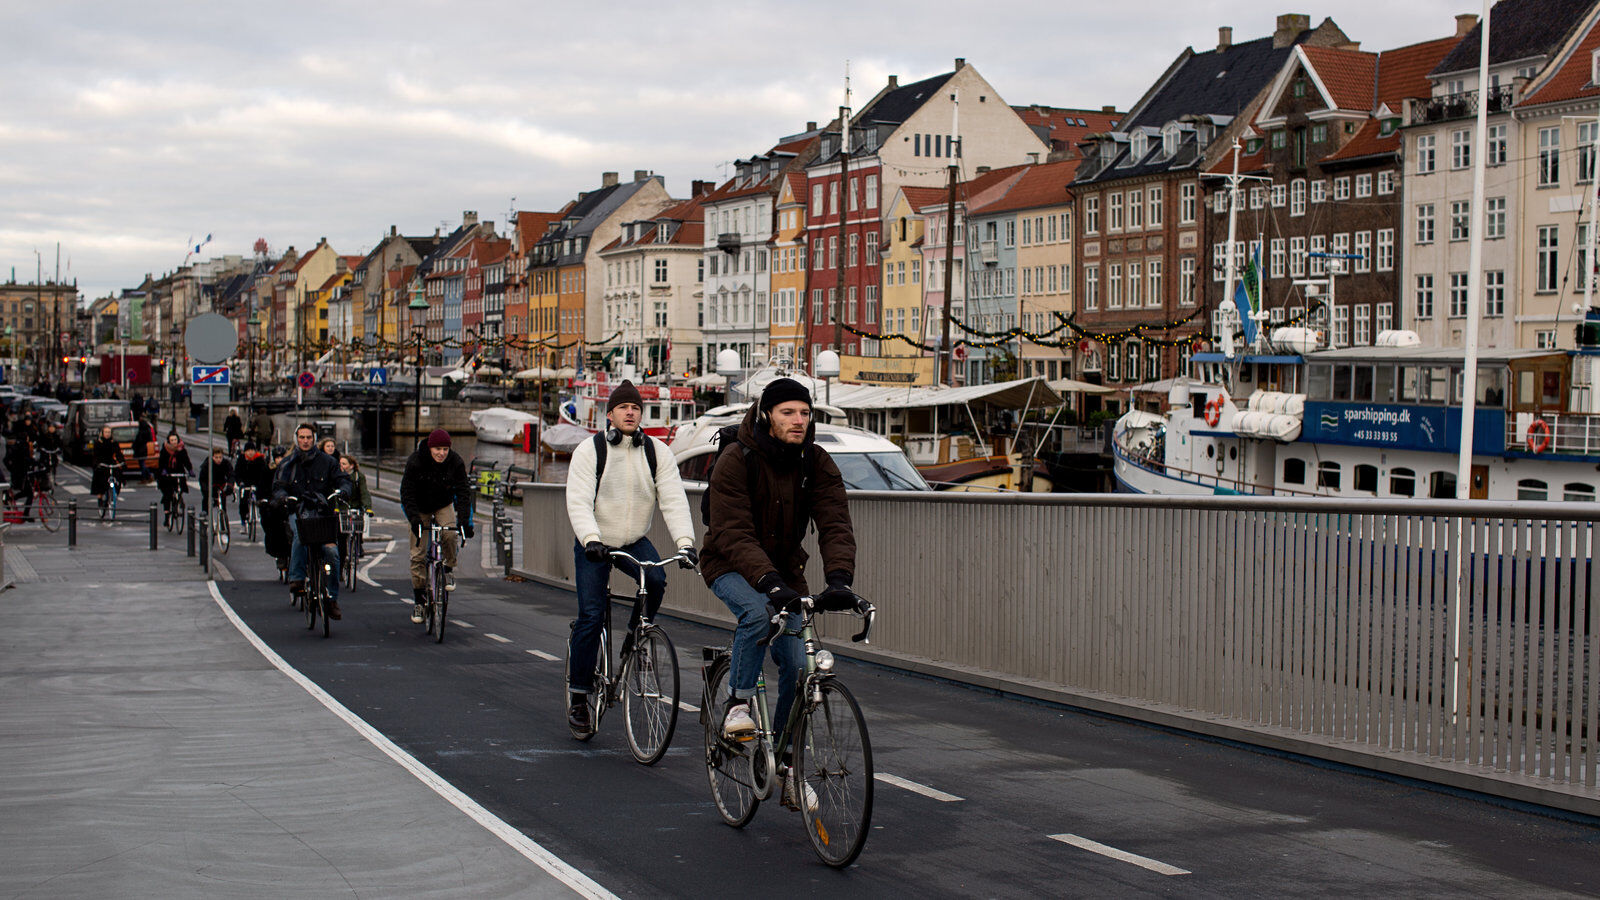 8 điều cấm kị không nên làm ở Đan Mạch - quê hương